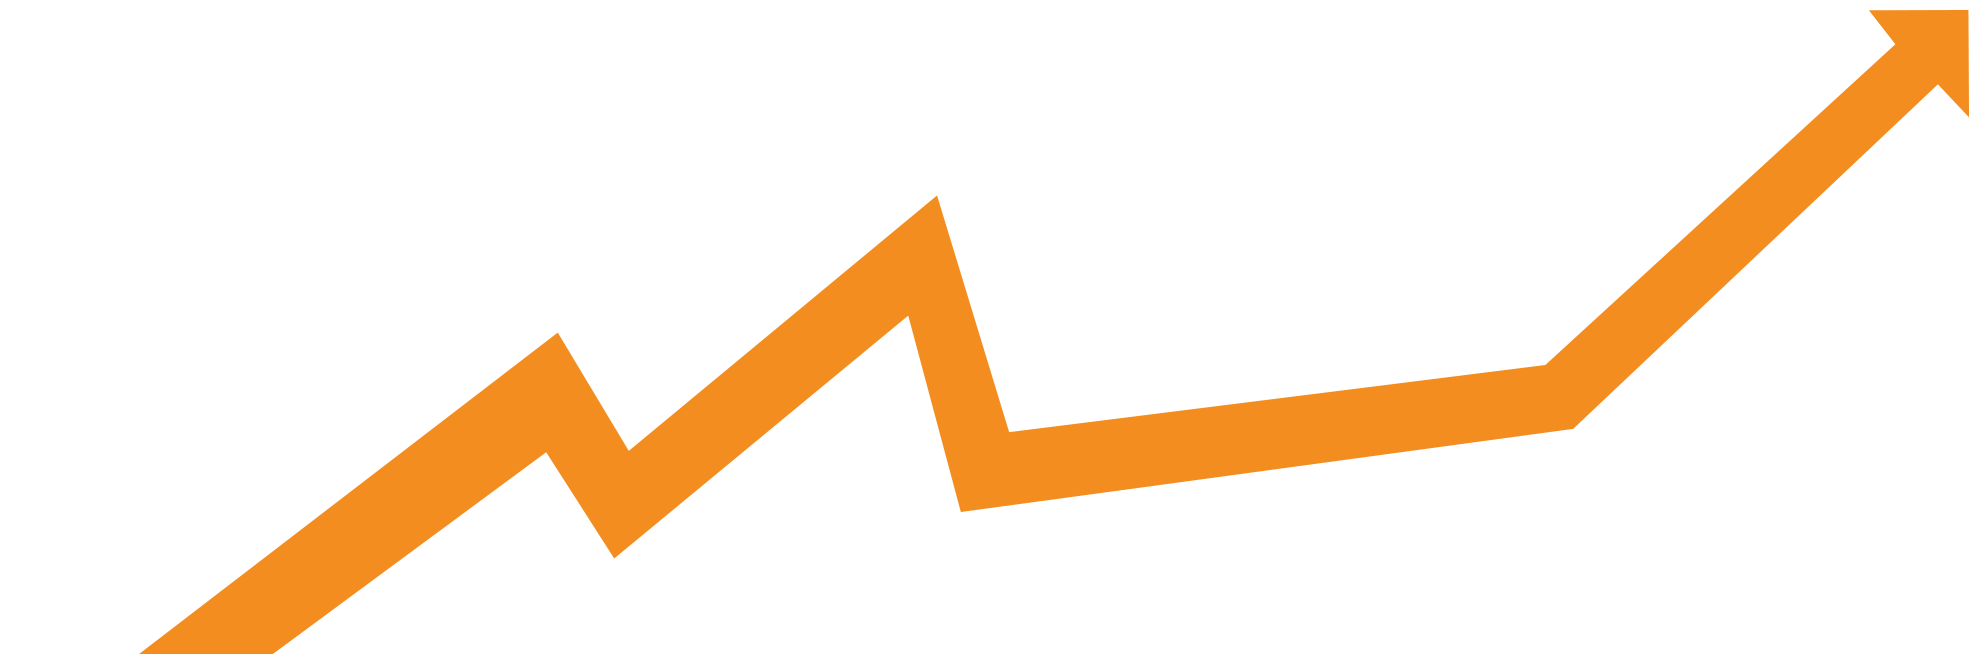 Orange-Arrow-ZigZag-3